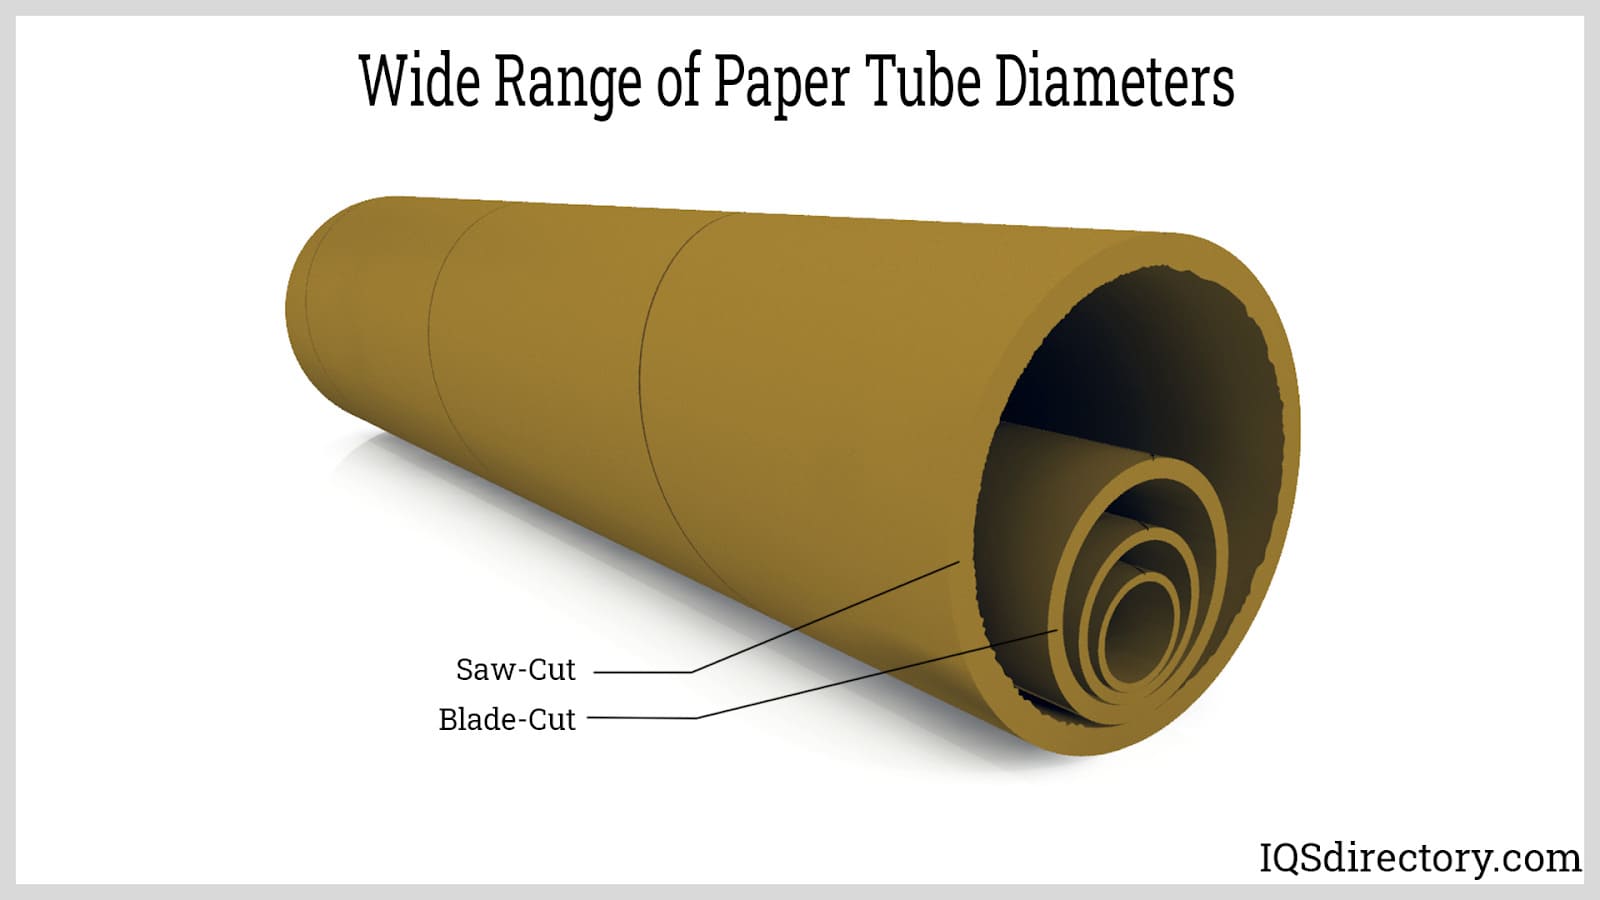 Wide Range of Paper Tube Diameters